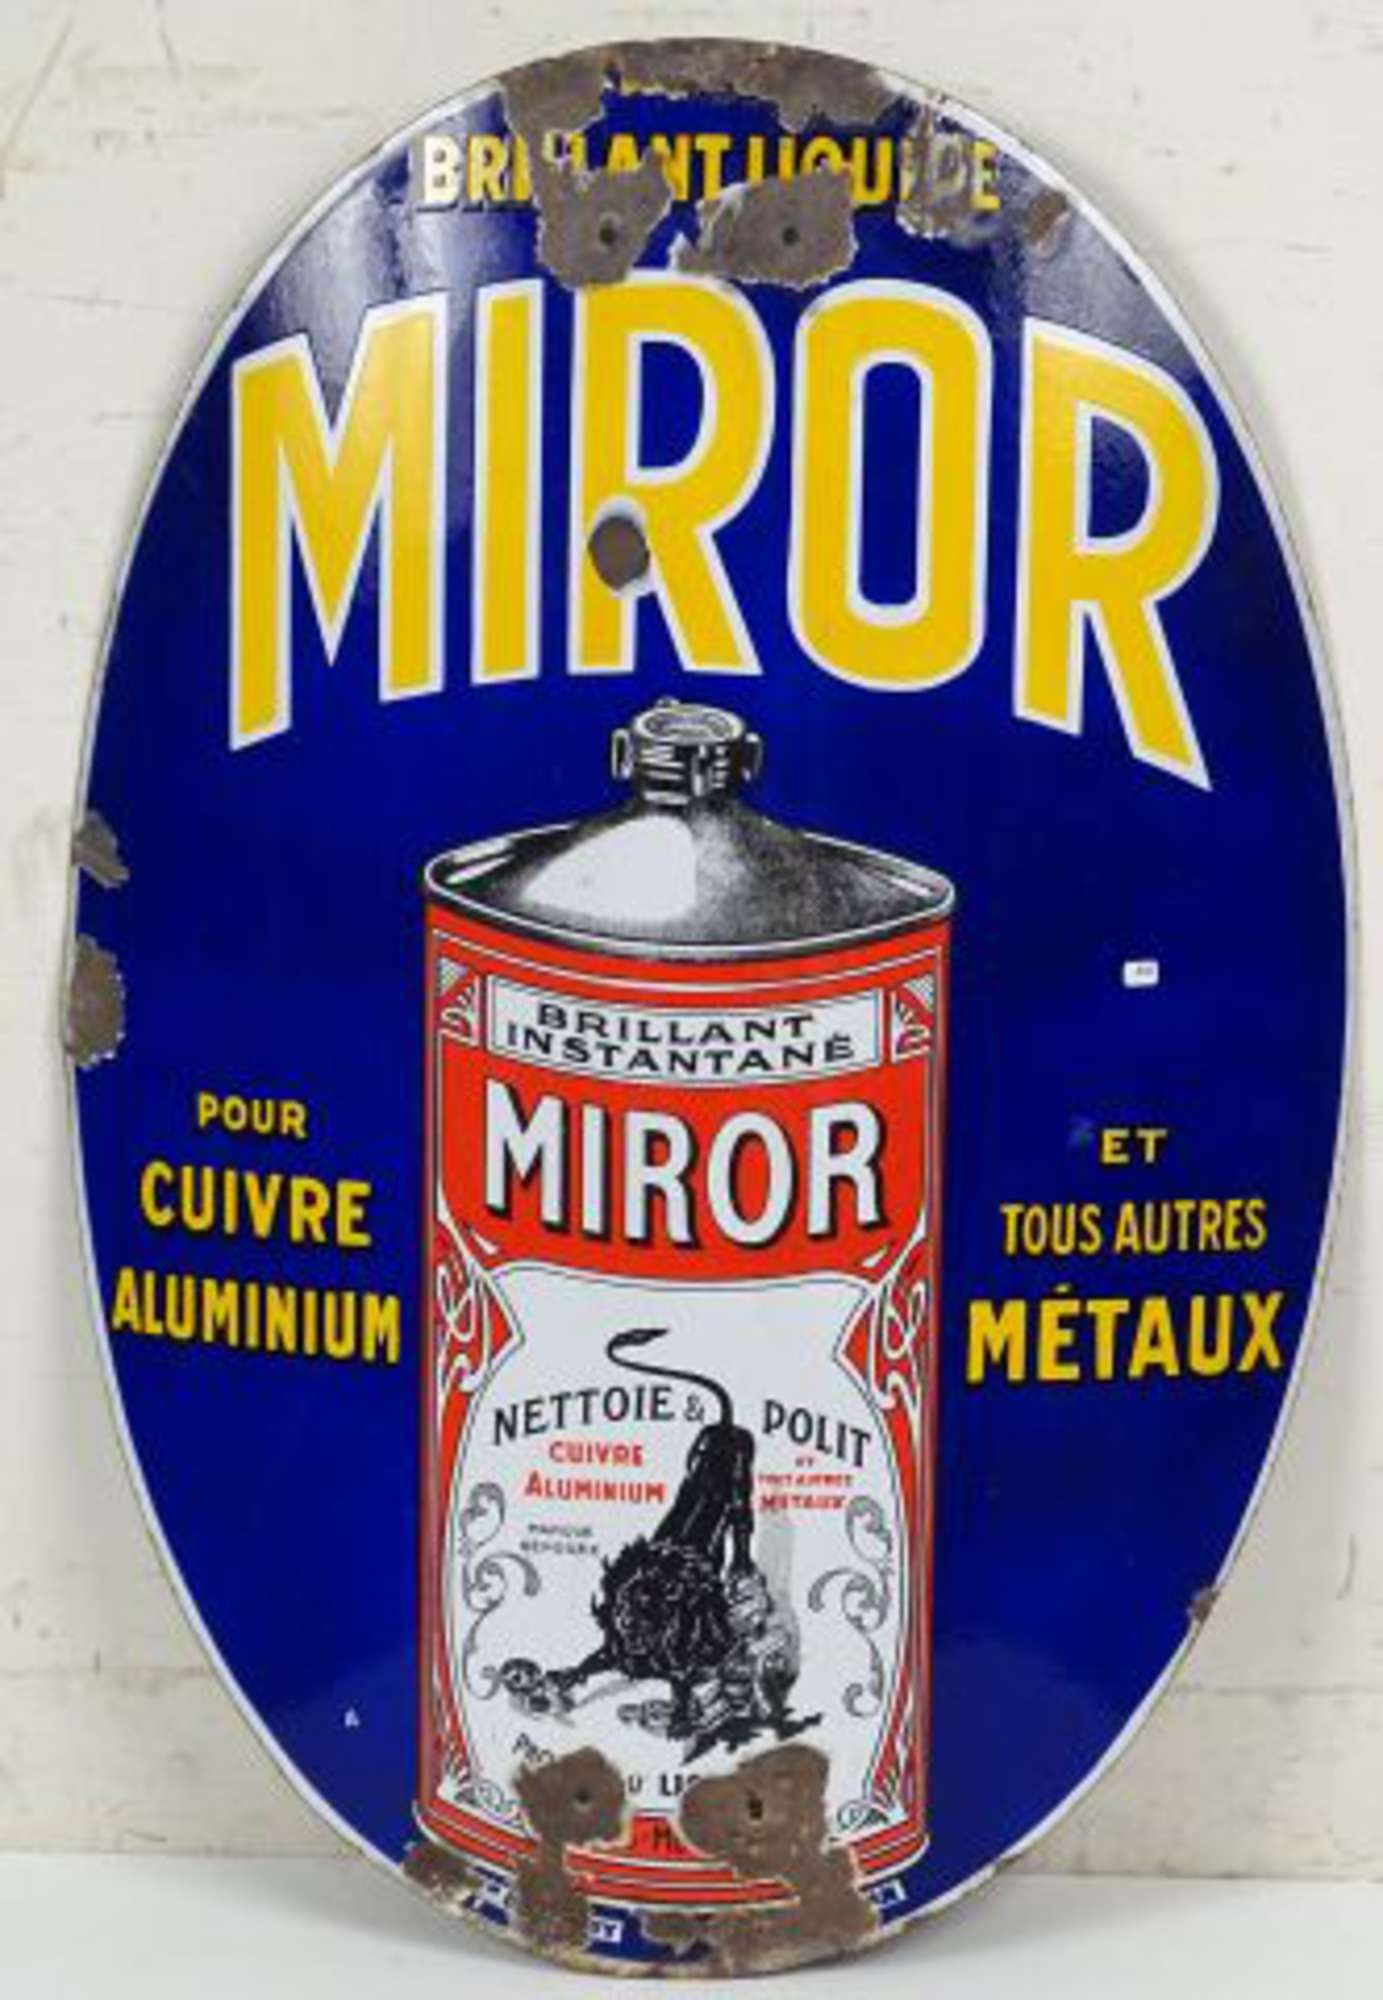 MIROR Brillant Liquide - Lion Noir à Paris-Montrouge : Plaque émaillée  cintrée de forme ovale. Perforations, Vente aux enchères : Estampes -  Affiches - Gravure - Lithographie - Eauforte